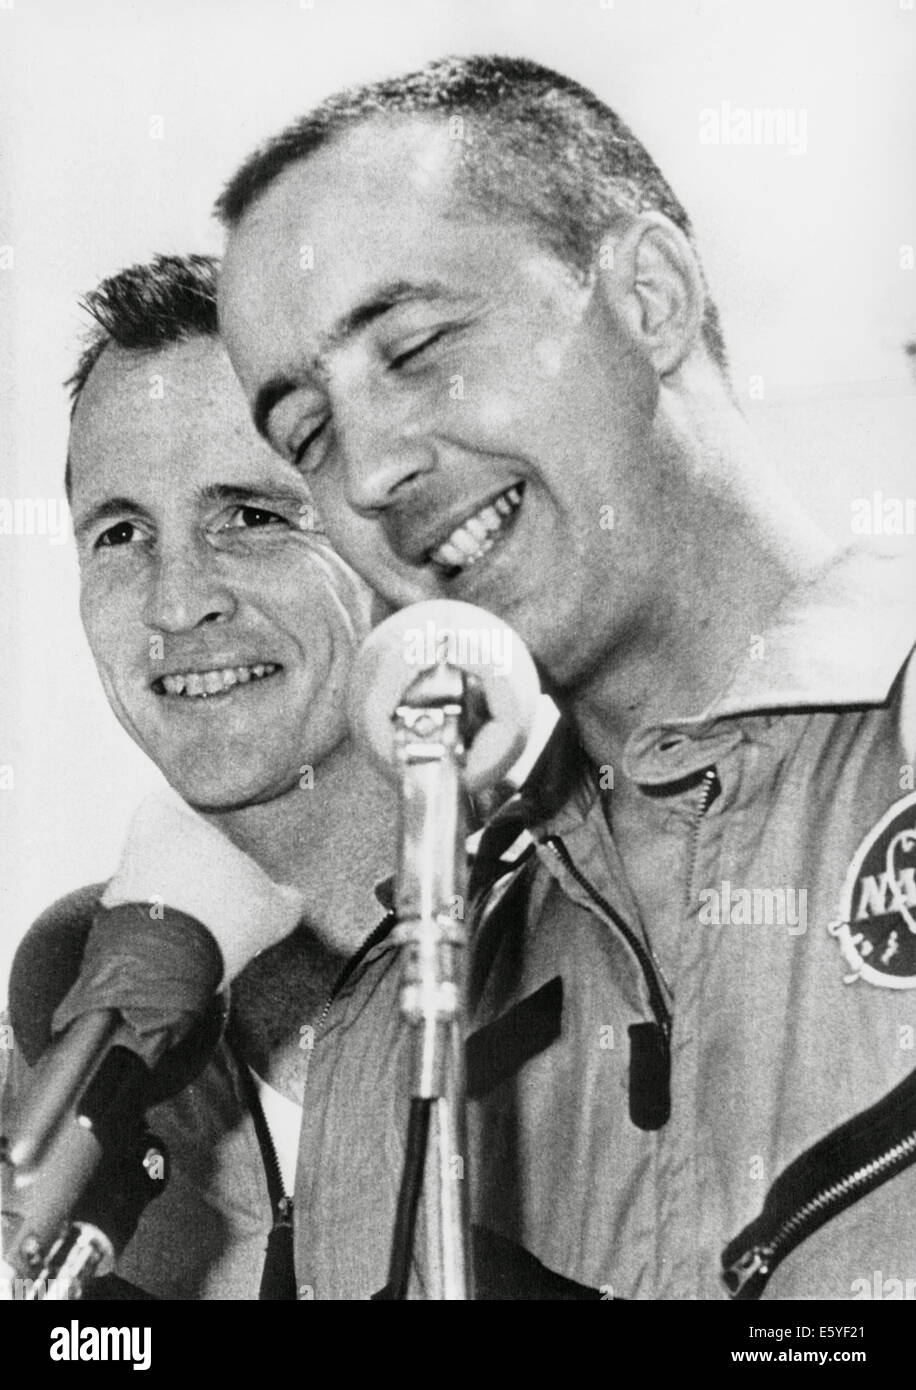 NASA-Astronauten-James McDivitt (R) und Edward White II bei Pressekonferenz nach Abschluss des Gemini IV Weltraum-Mission, 1965 Stockfoto